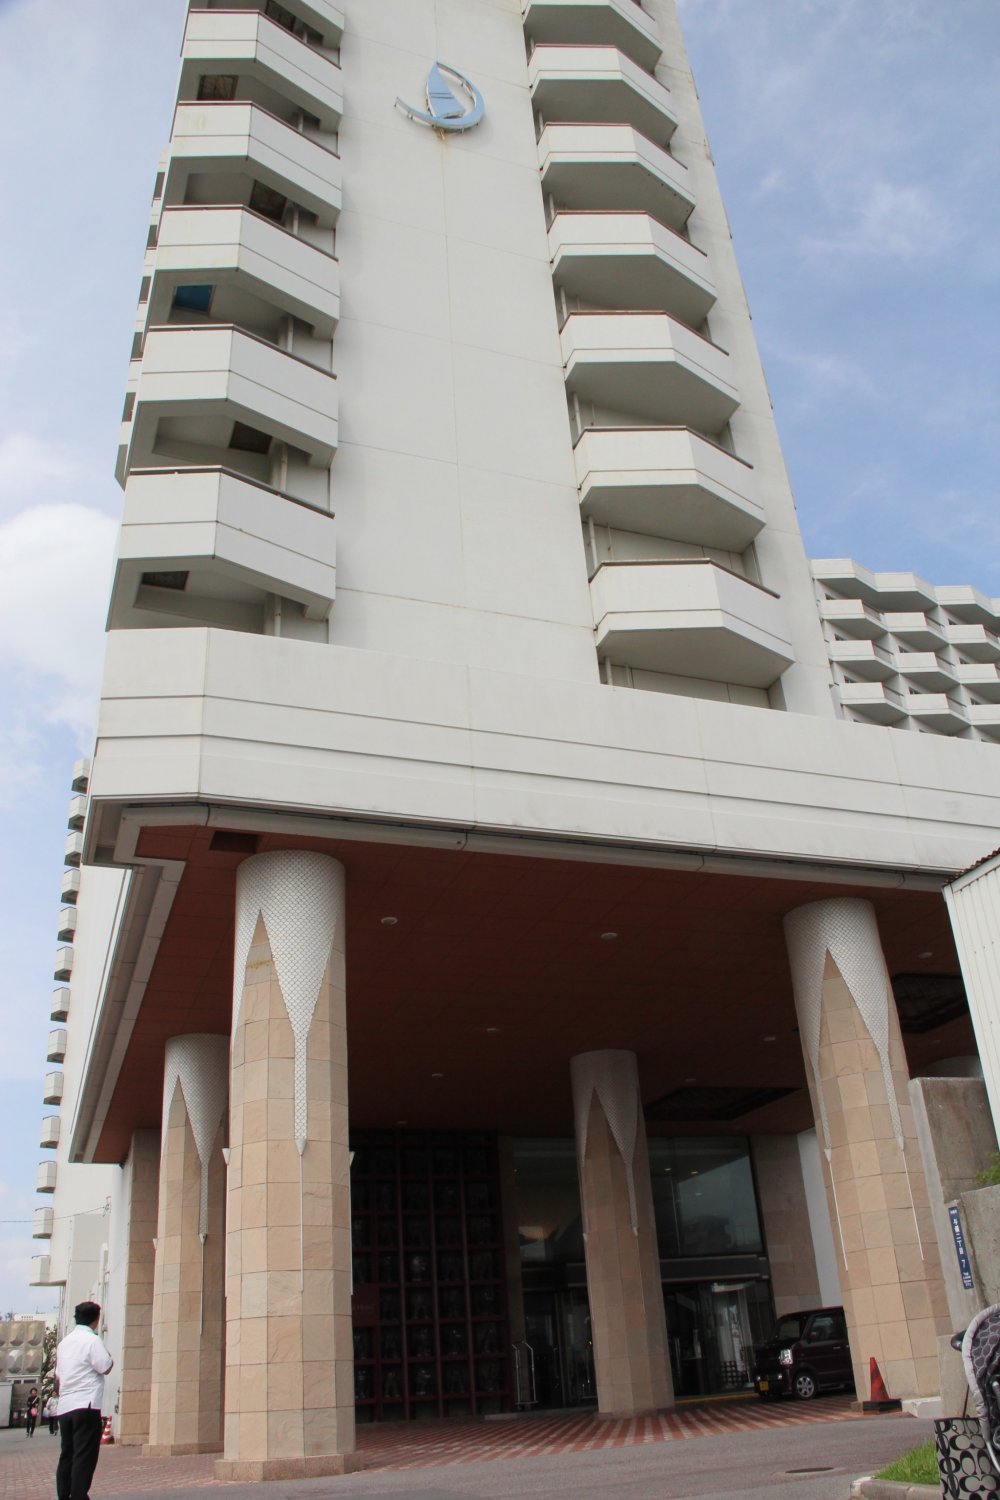 The Tokyo Dai-ichi Hotel Okinawa Grand Mer Resort is one of the only resort hotels in Okinawa City